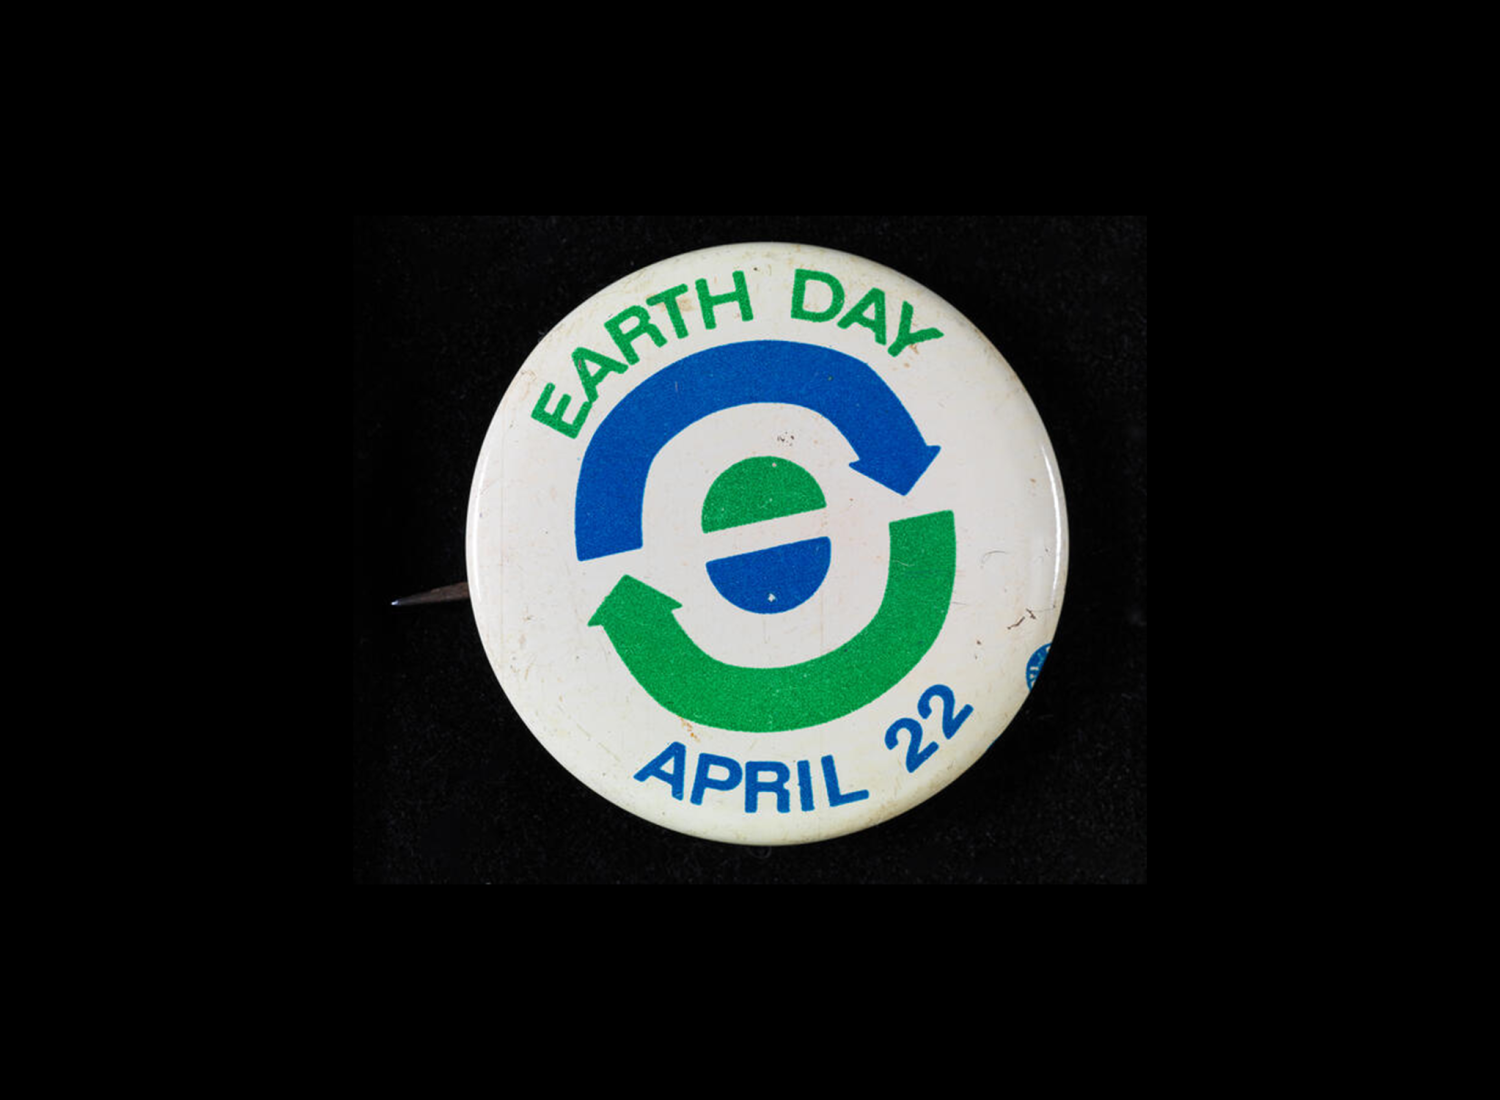 재활용과 지구를 상징하는 파란색 및 녹색 화살표와 반원으로 22월 XNUMX일 지구의 날을 읽는 흰색 버튼